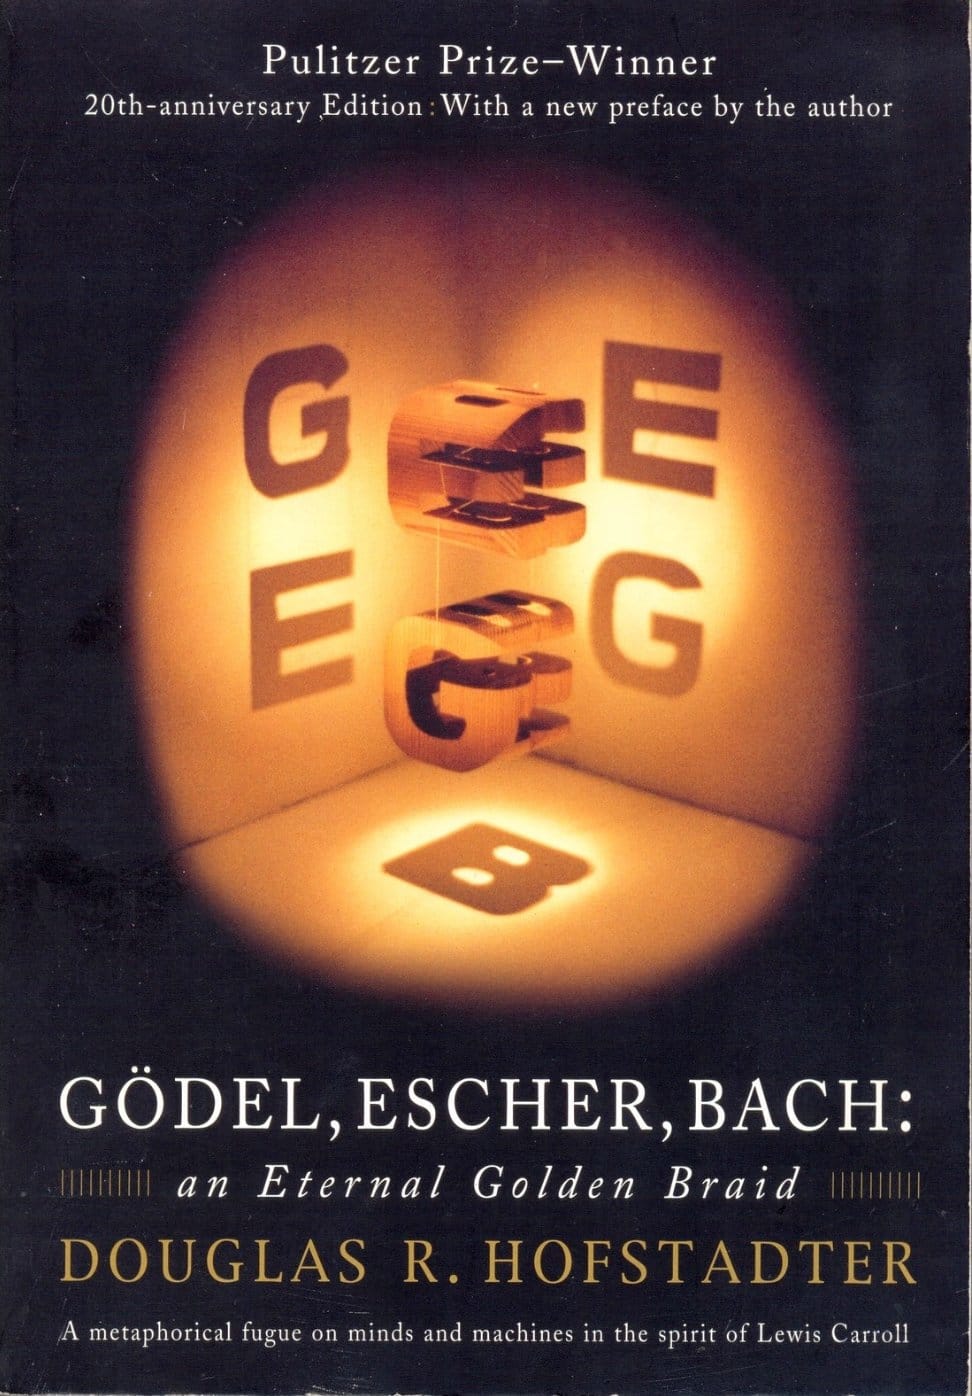 奇書面世40年︰《Gödel, Escher, Bach》的知識漫遊